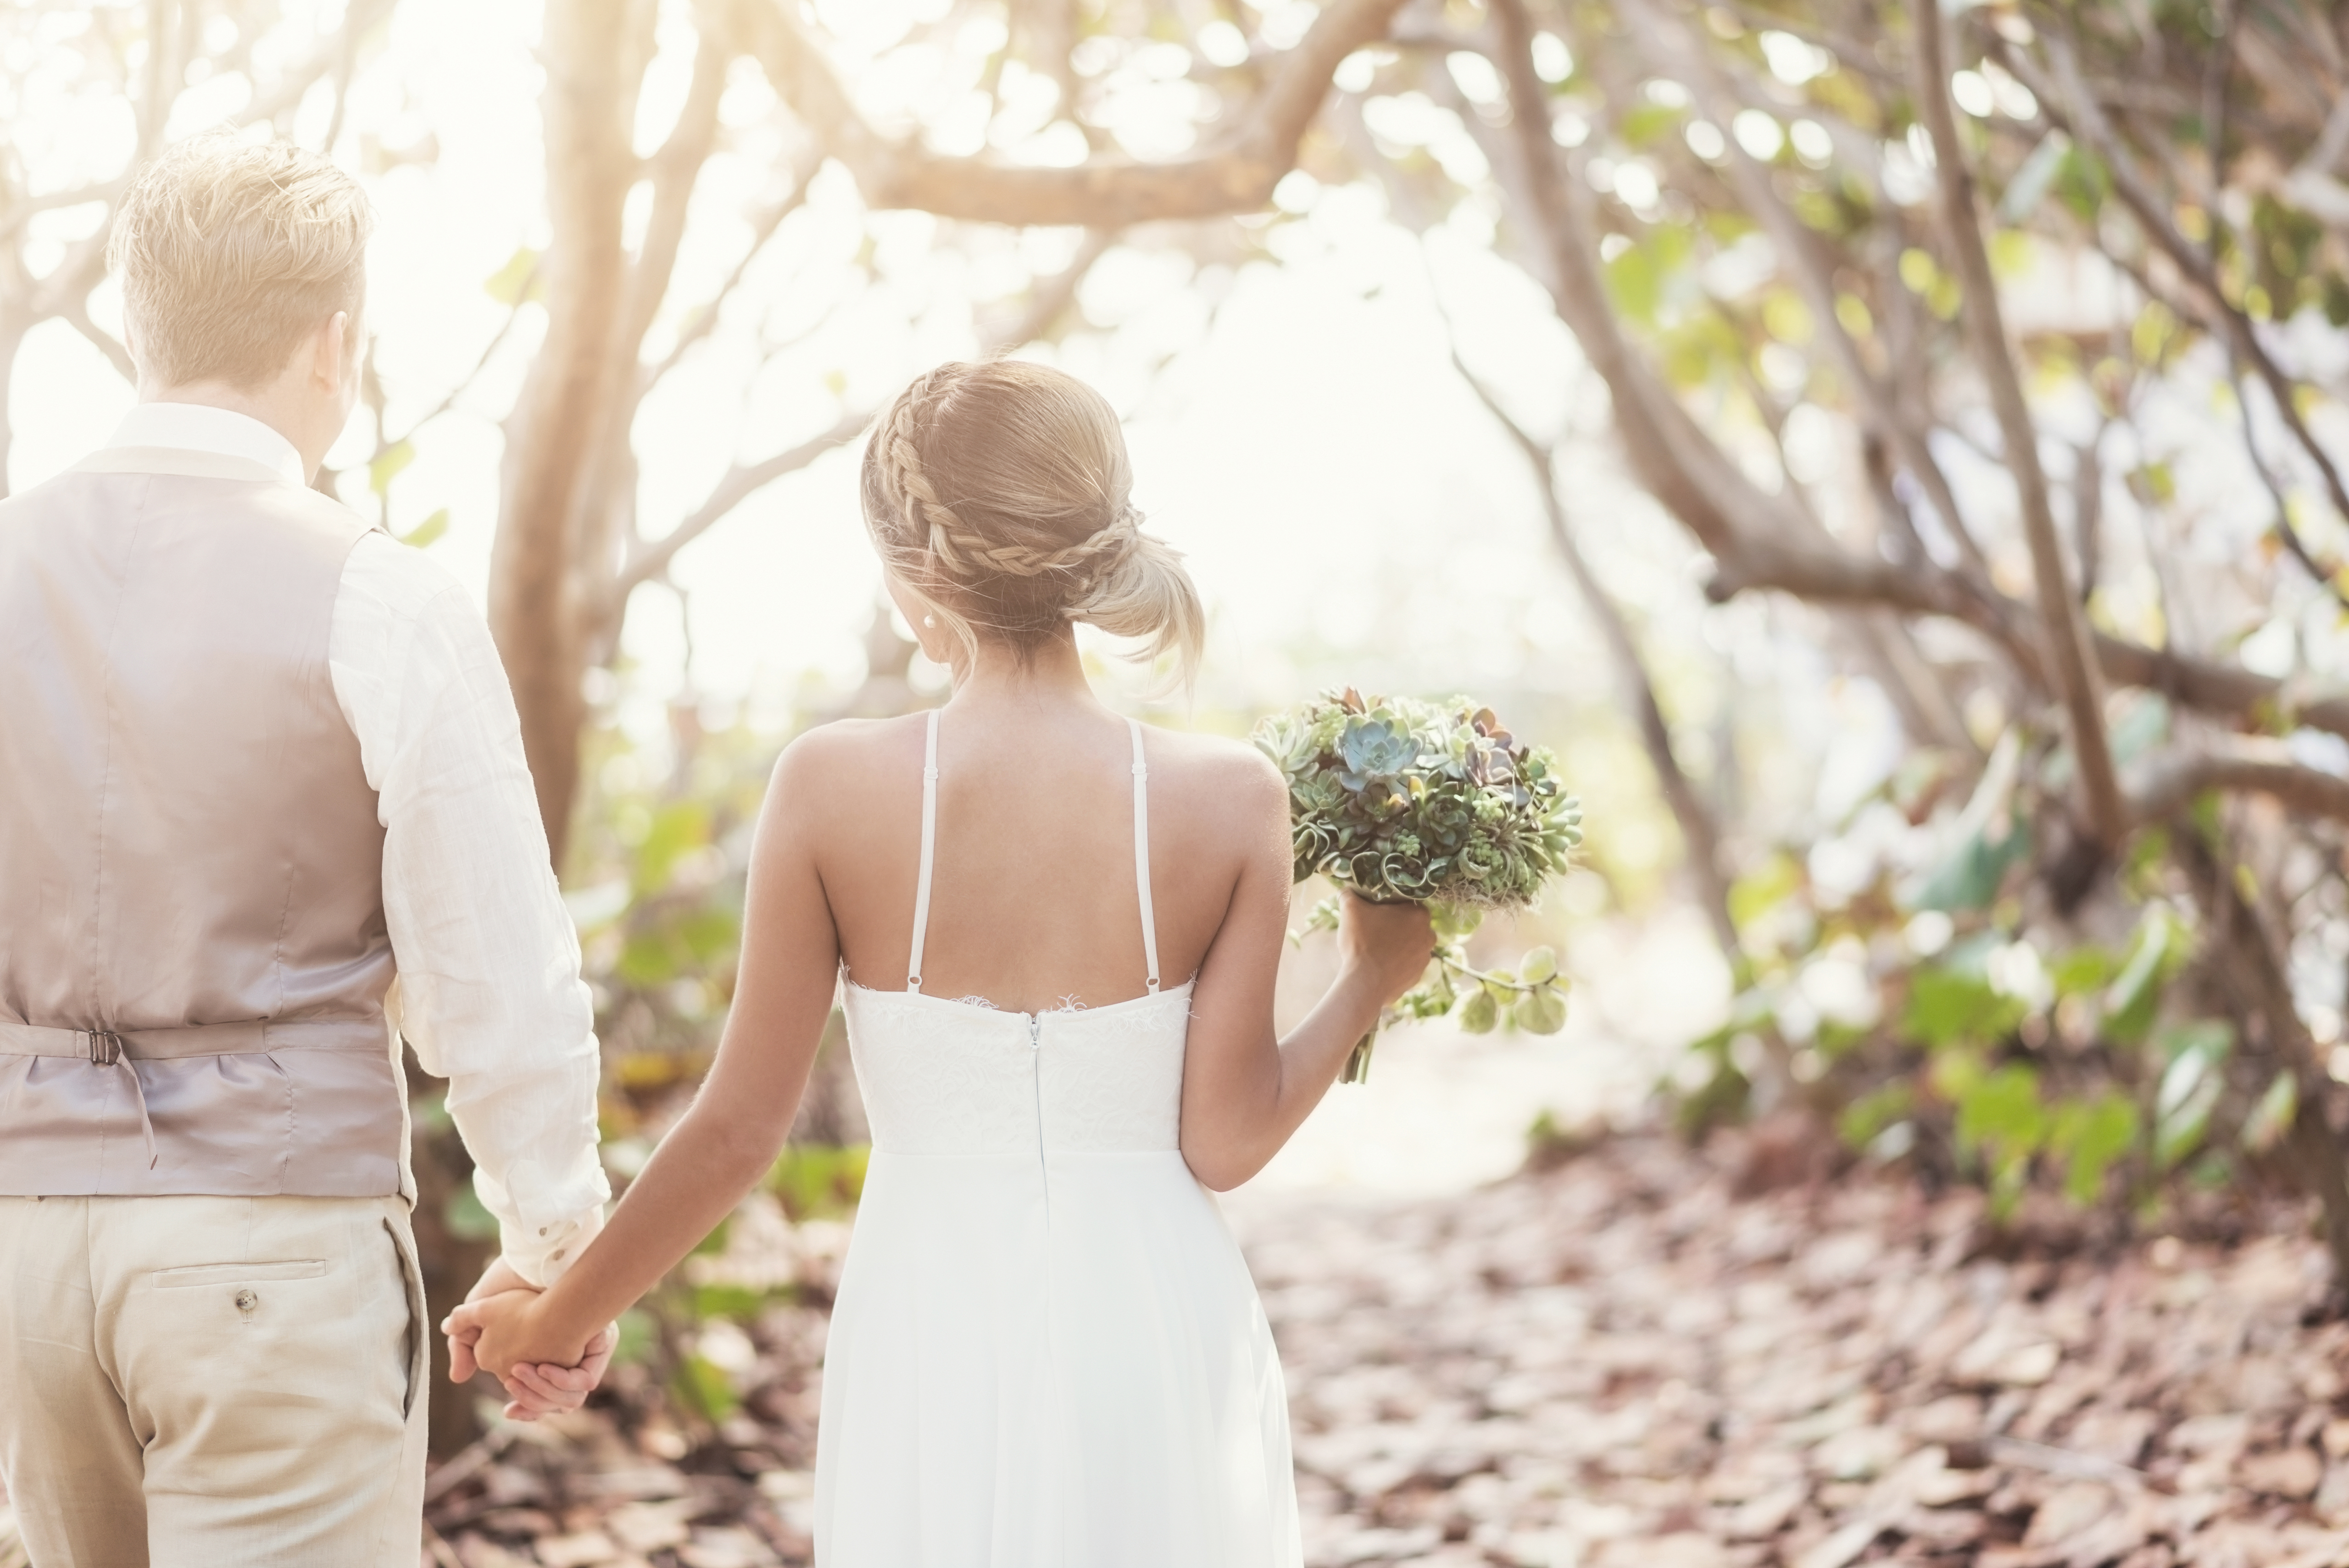 Kết hôn là một sự kiện đáng nhớ trong đời người. Hãy chúc mừng và chia sẻ niềm hạnh phúc cùng với những đôi uyên ương bằng việc xem những bức ảnh đẹp về lễ cưới.